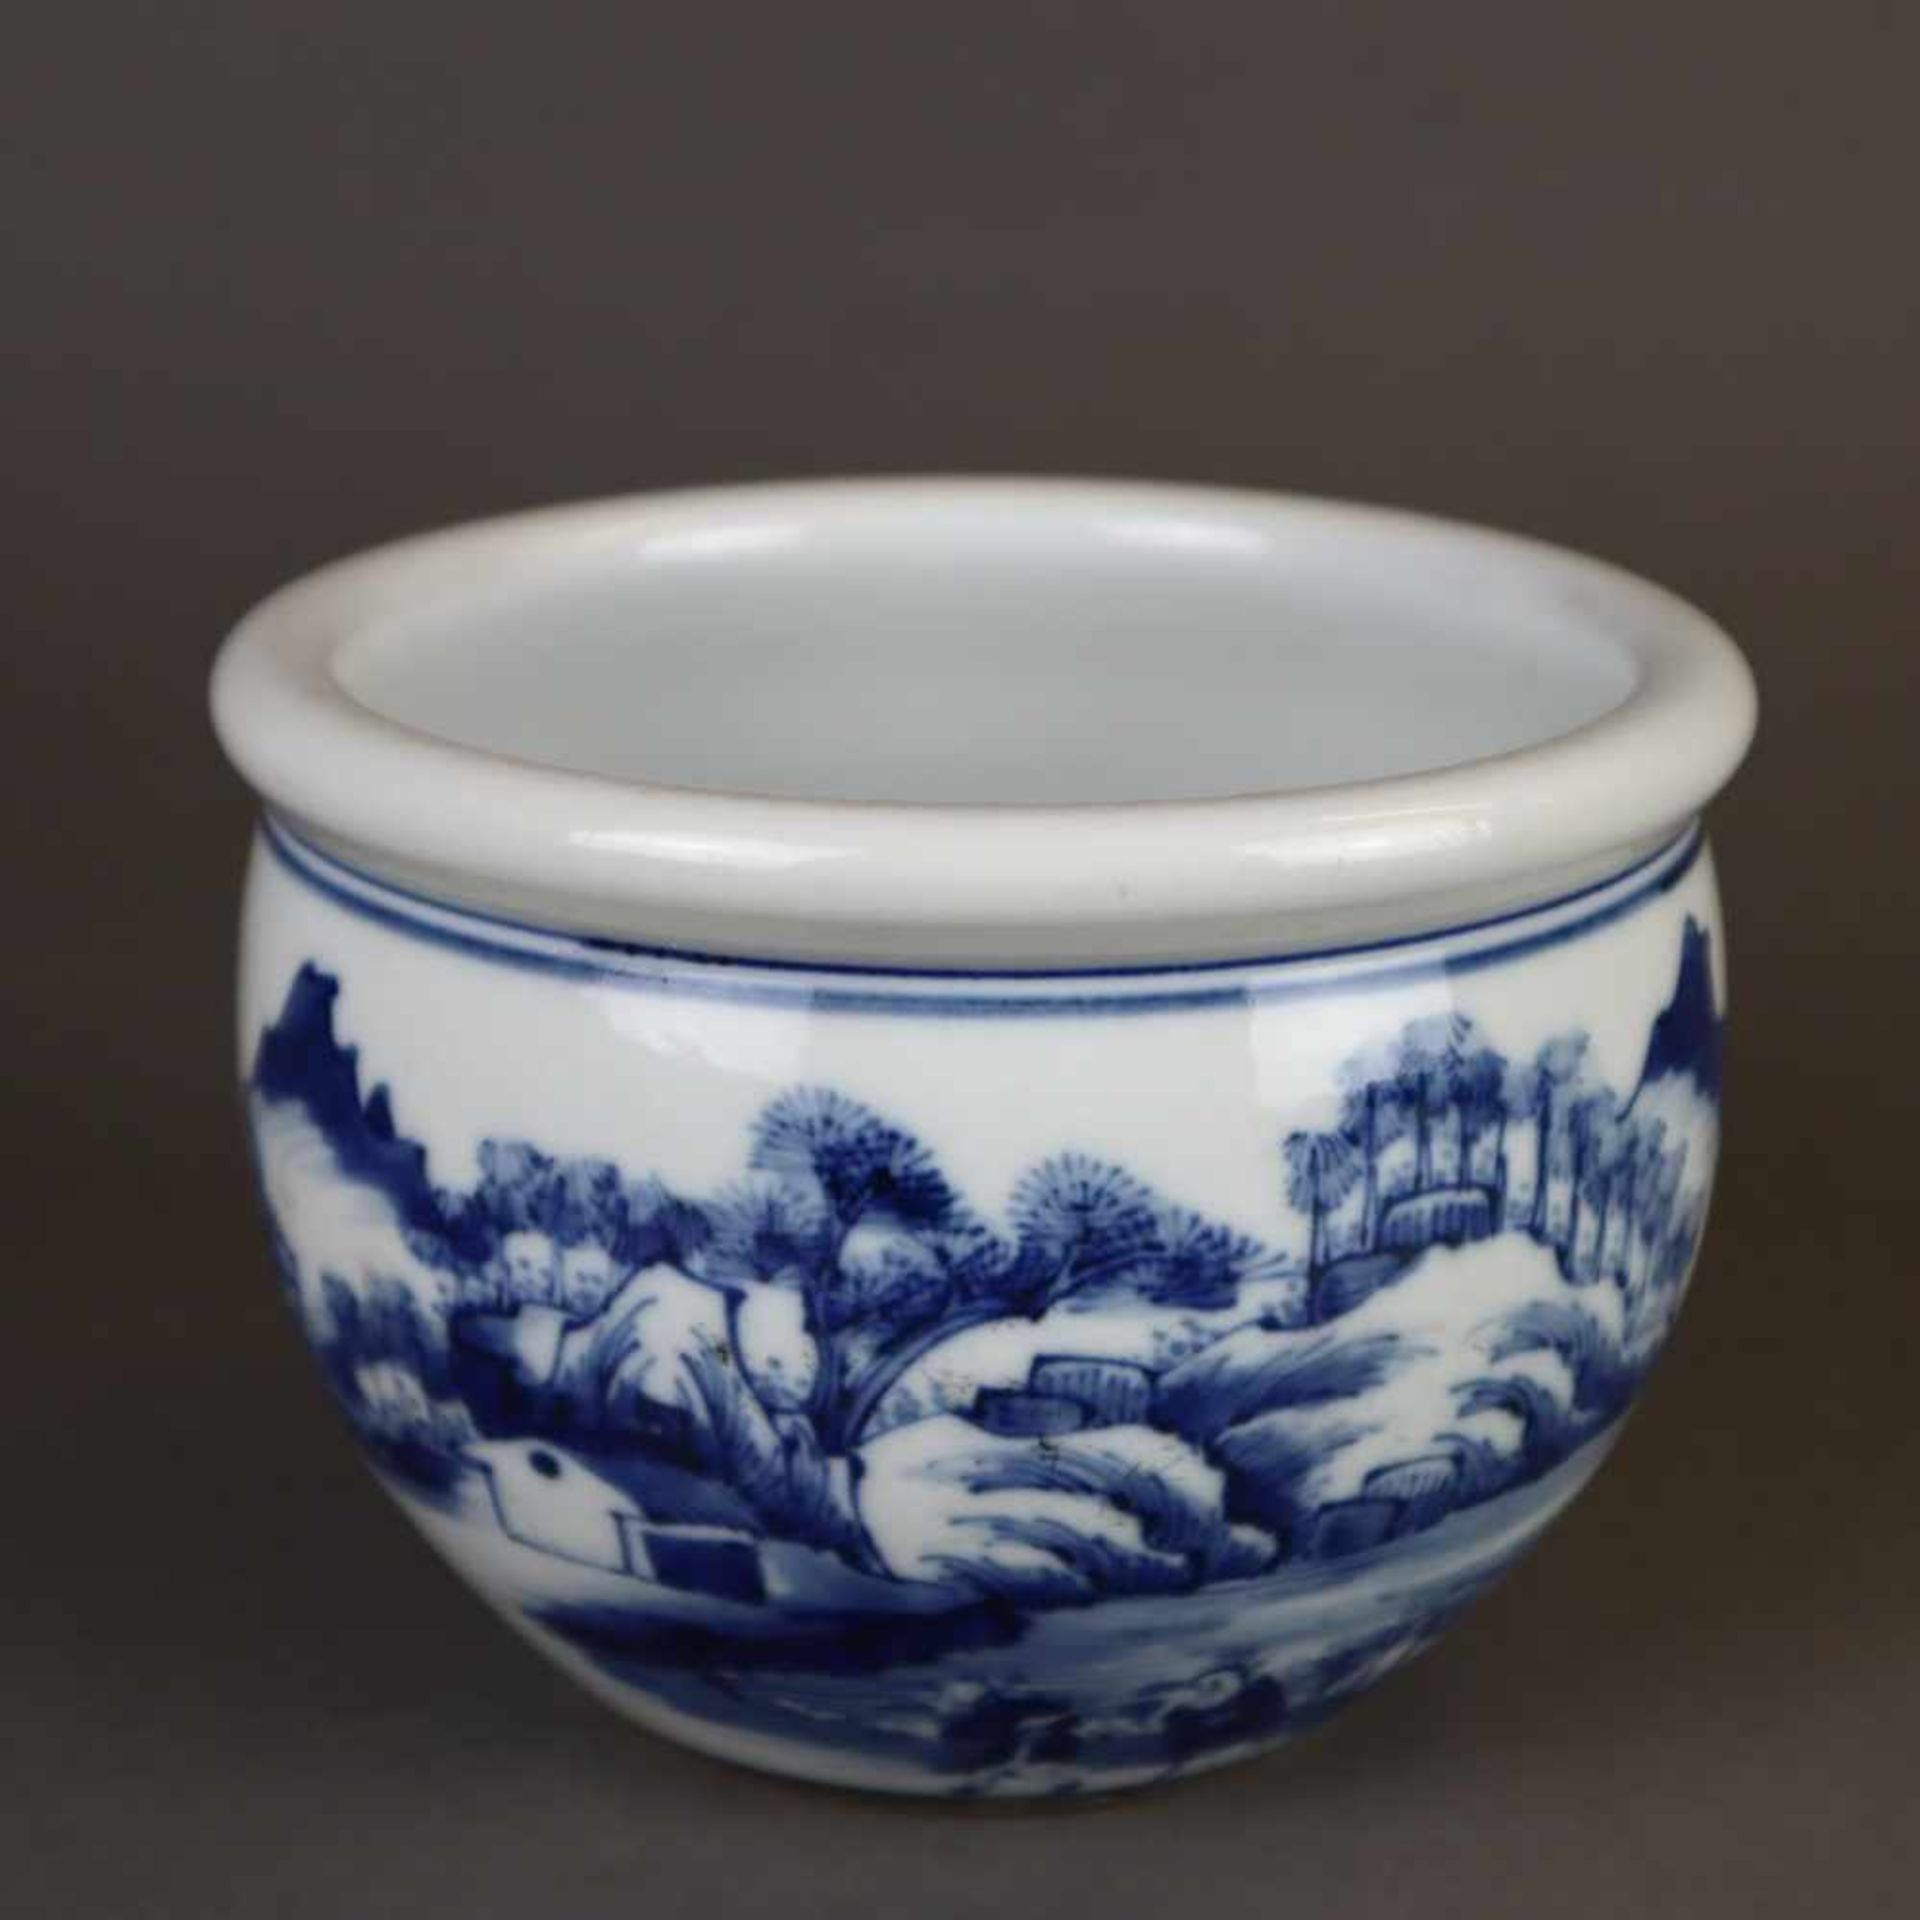 Kleiner Cachepot - China, Porzellan mit Shan-Shui-Landschaft in Unterglasurblau, eingezogene